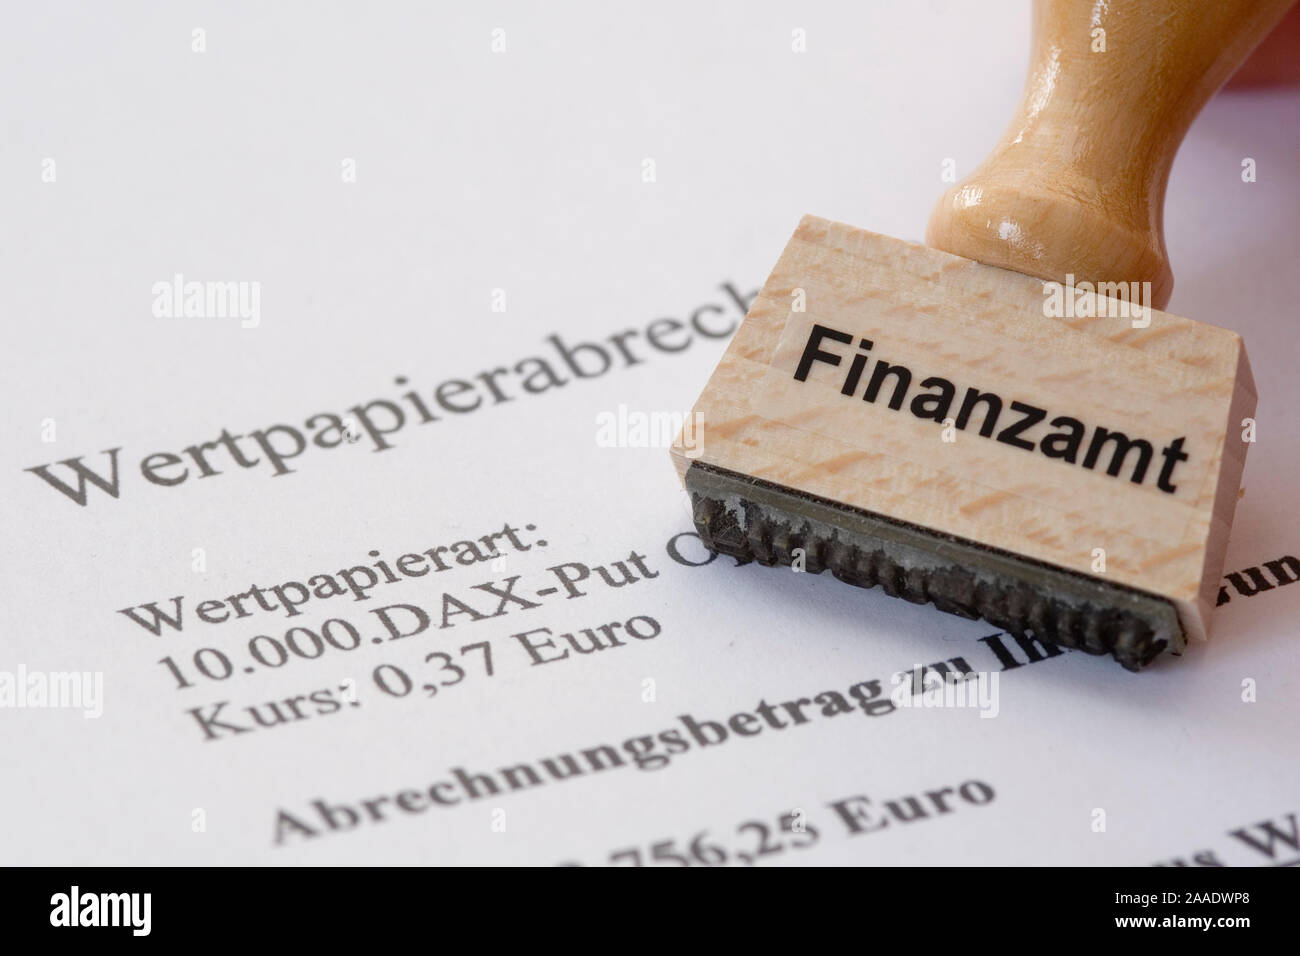 Stempel mit Aufschrift Finanzamt liegt auf Wertpapierabrechnung Stock Photo